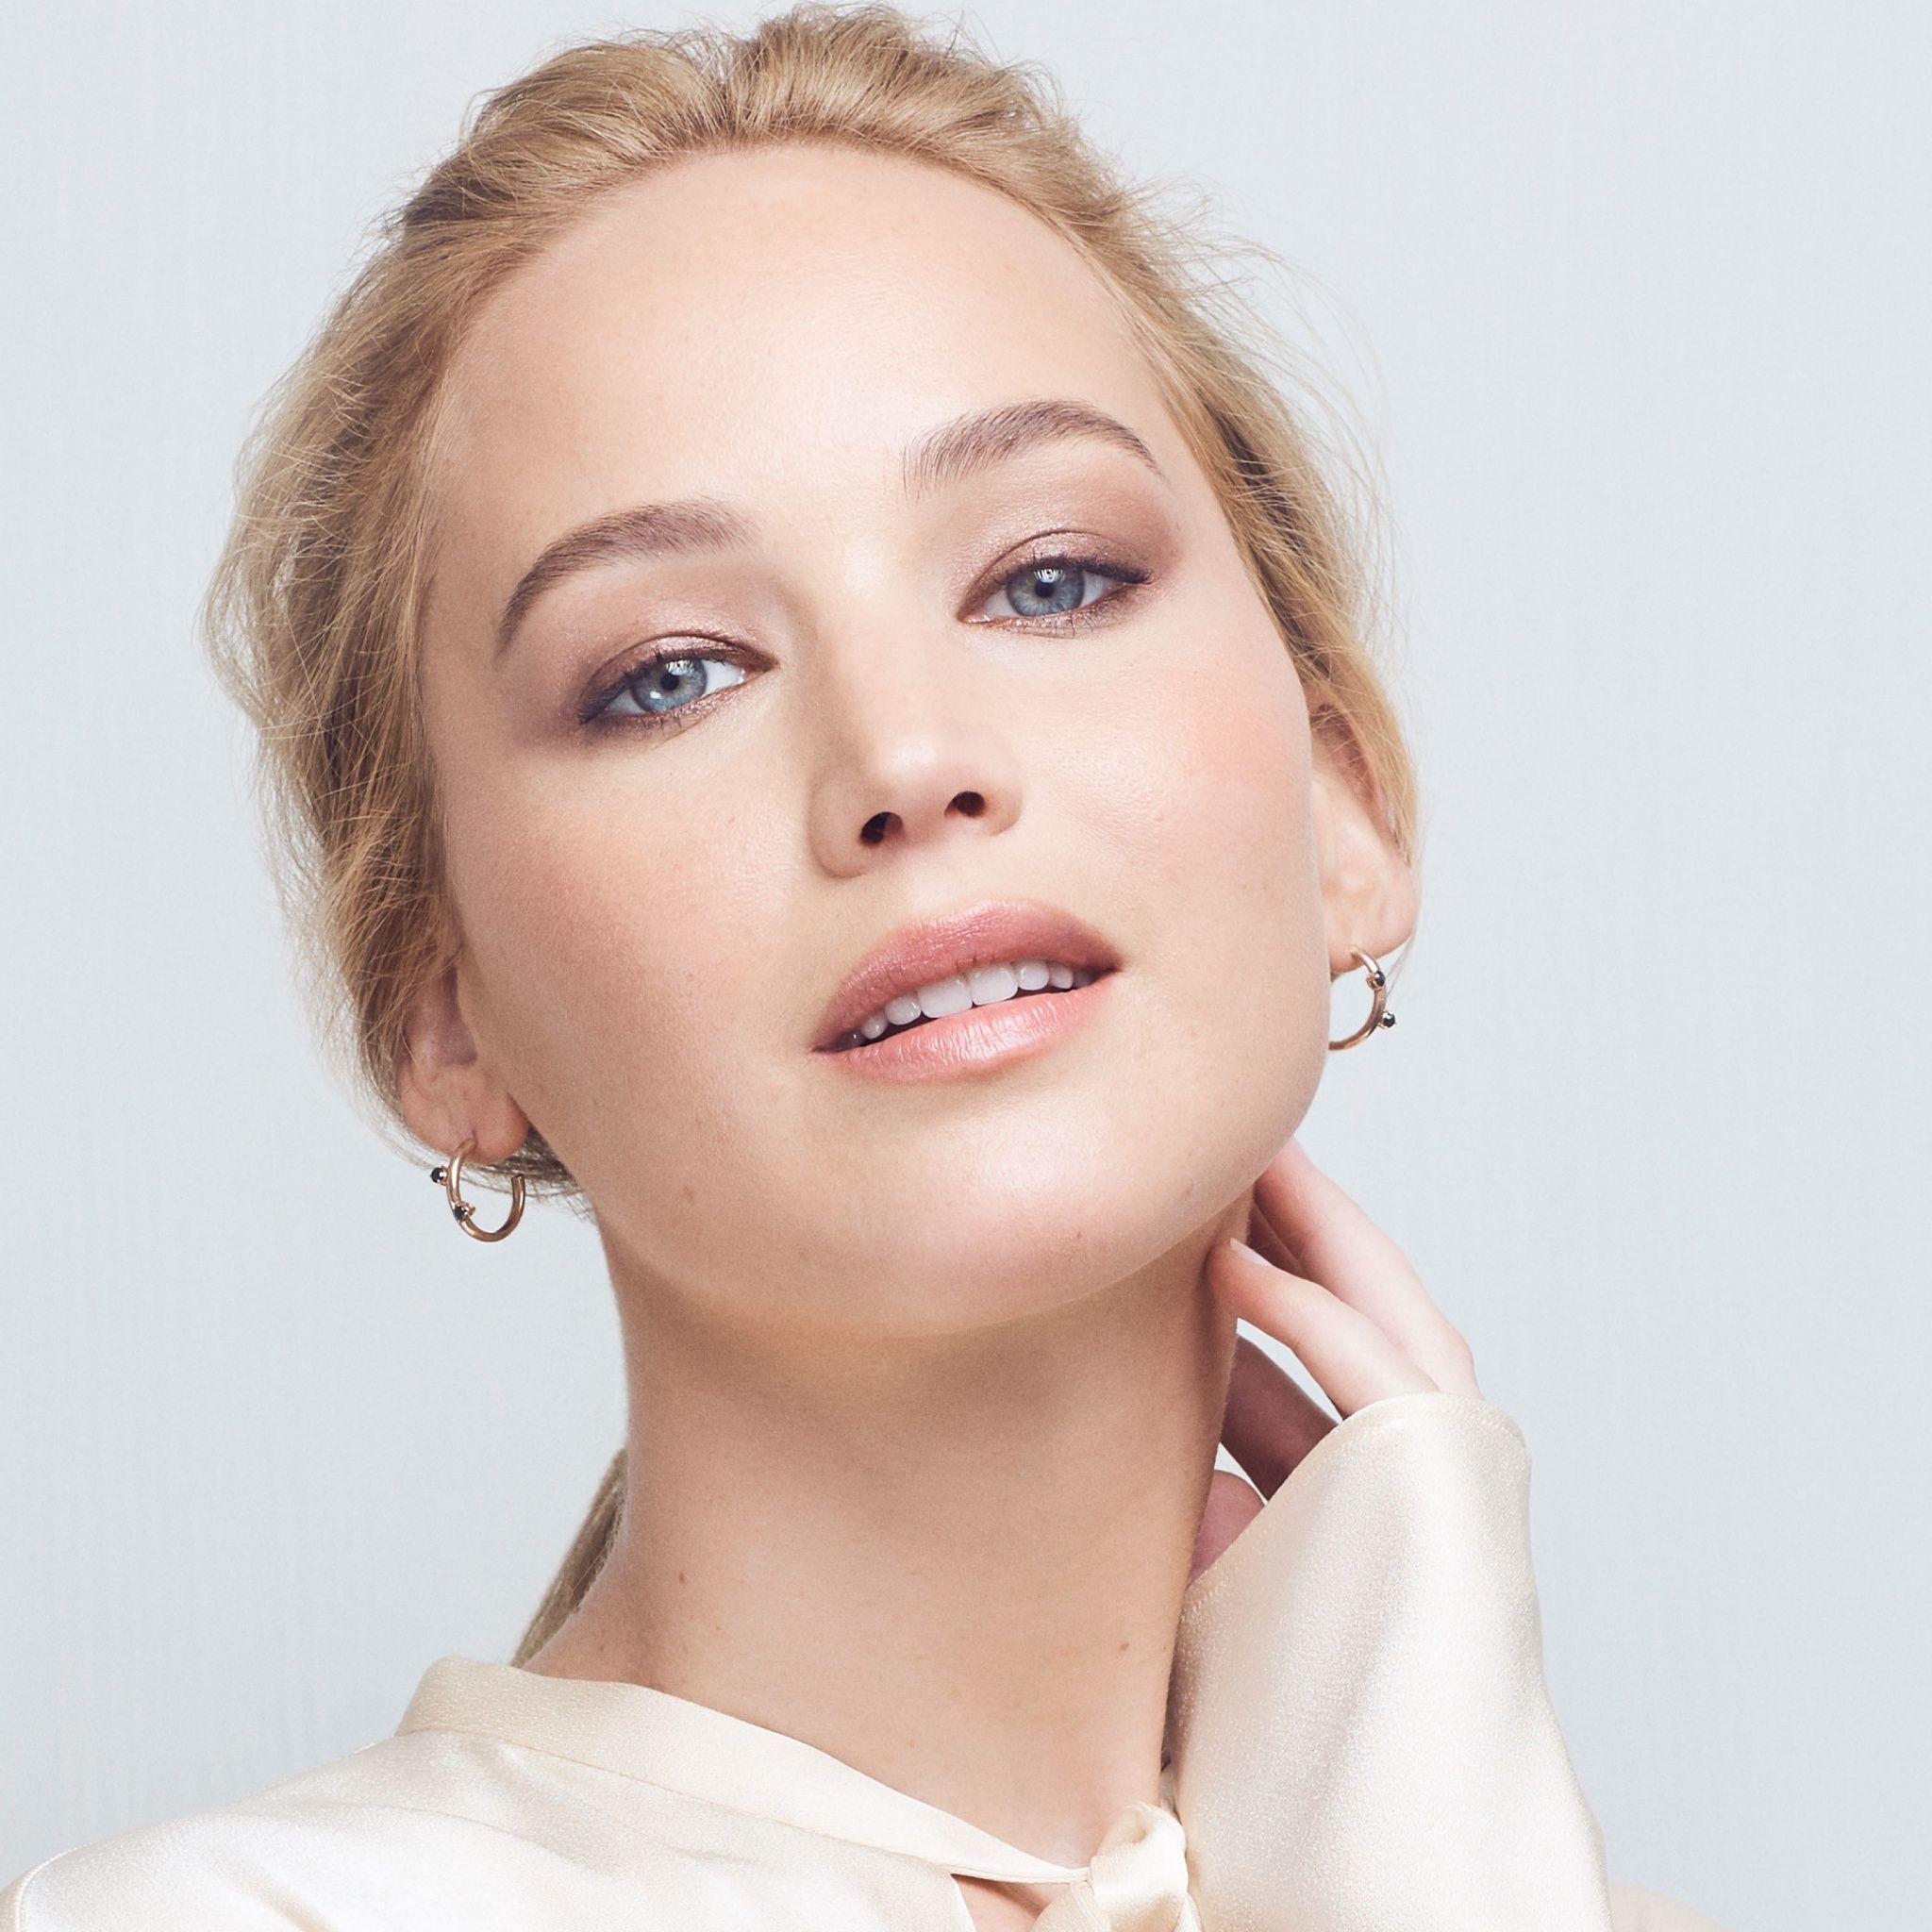 Jennifer Lawrence Wallpaper 4K, Beautiful actress